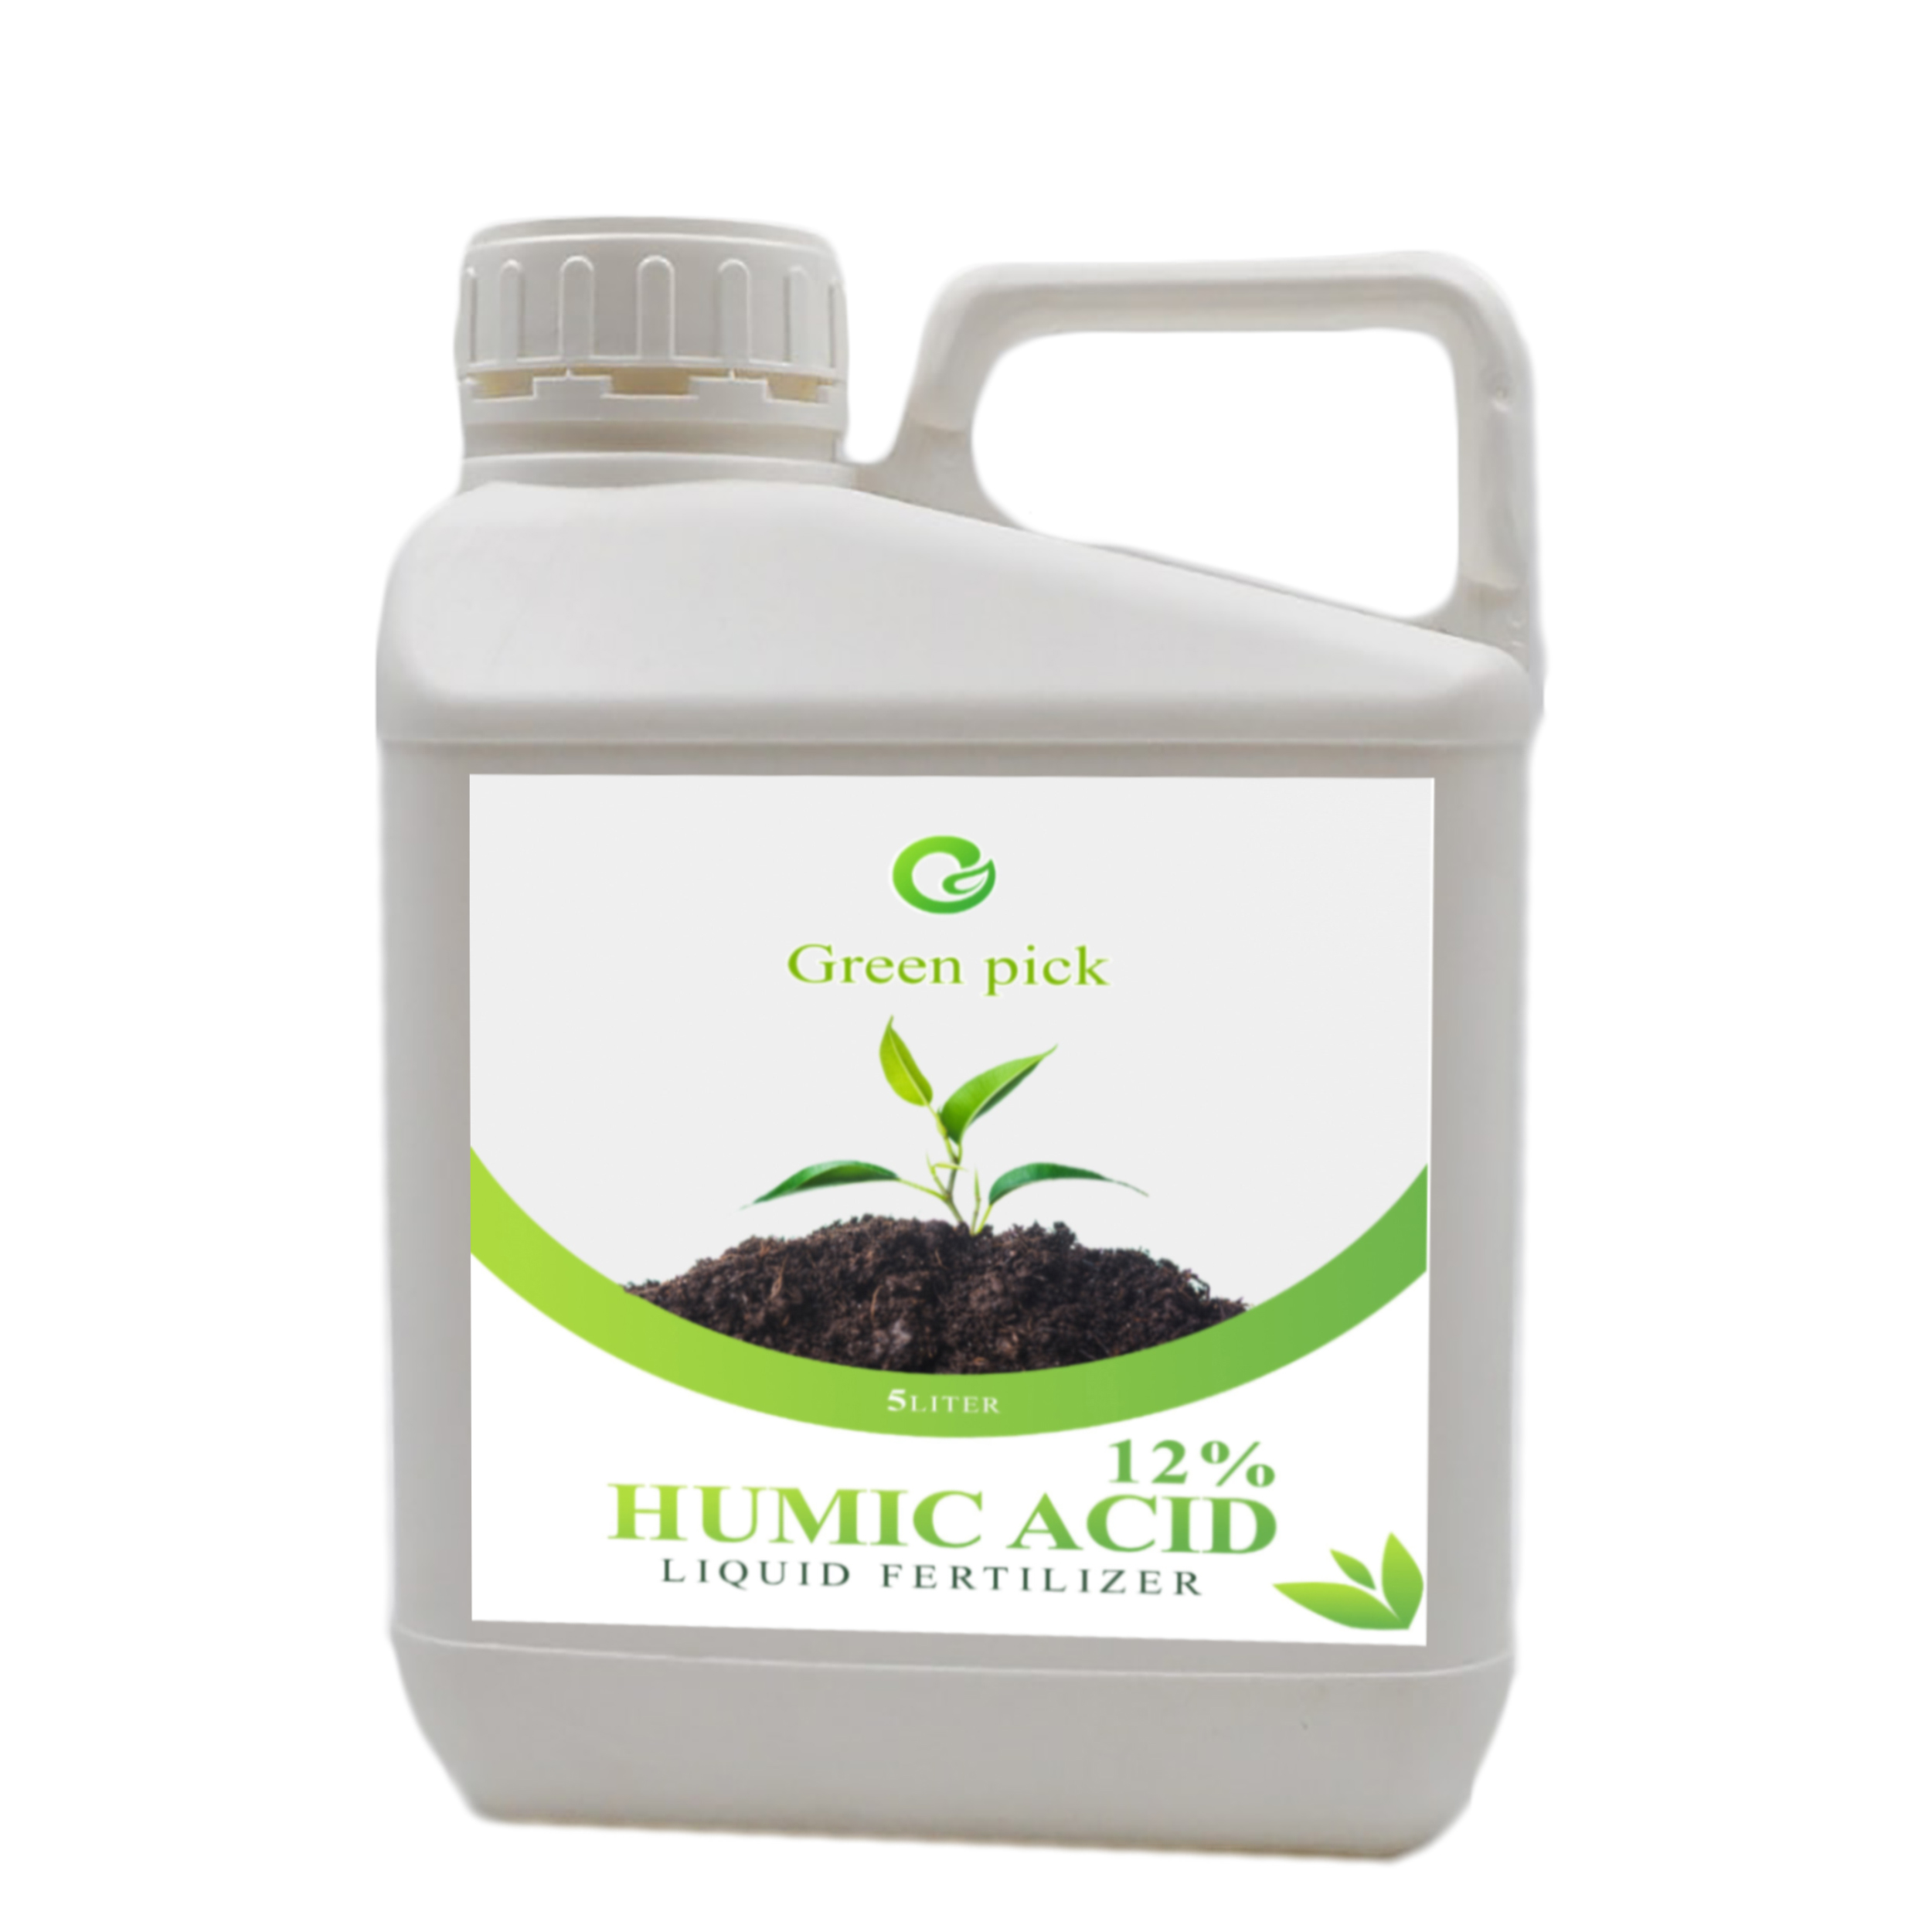 نکته خرید - قیمت روز کود مایع هیومیک اسید گرین پیک مدل Hu5000 حجم 5 لیتر خرید